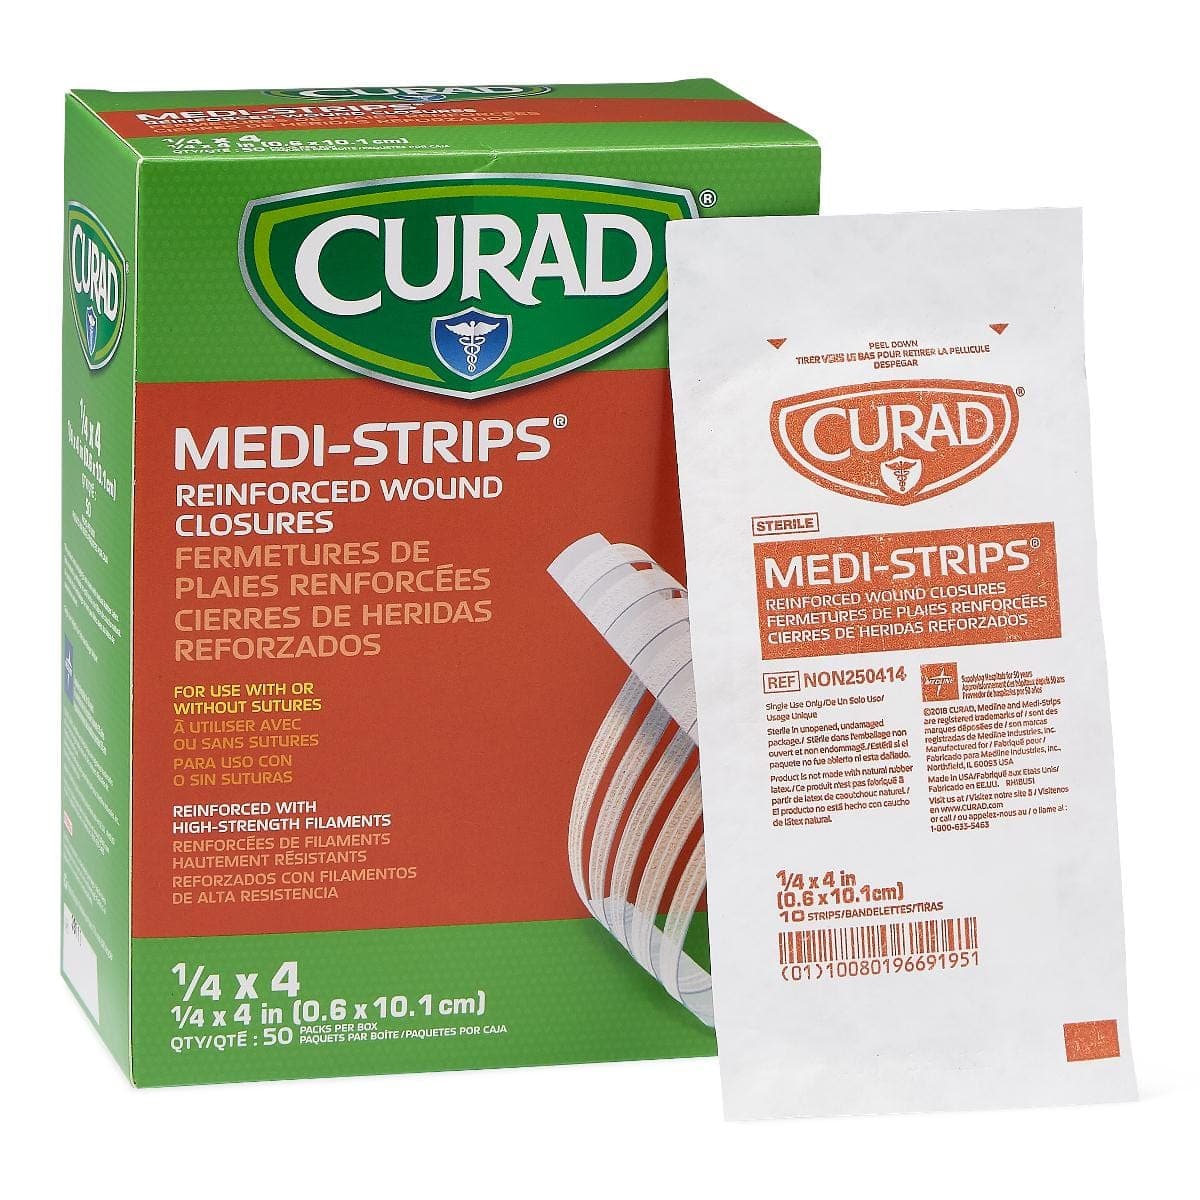 Medline 1/4"x4" / Pack of 6 Medline CURAD Medi-Strip Reinforced Wound Closures